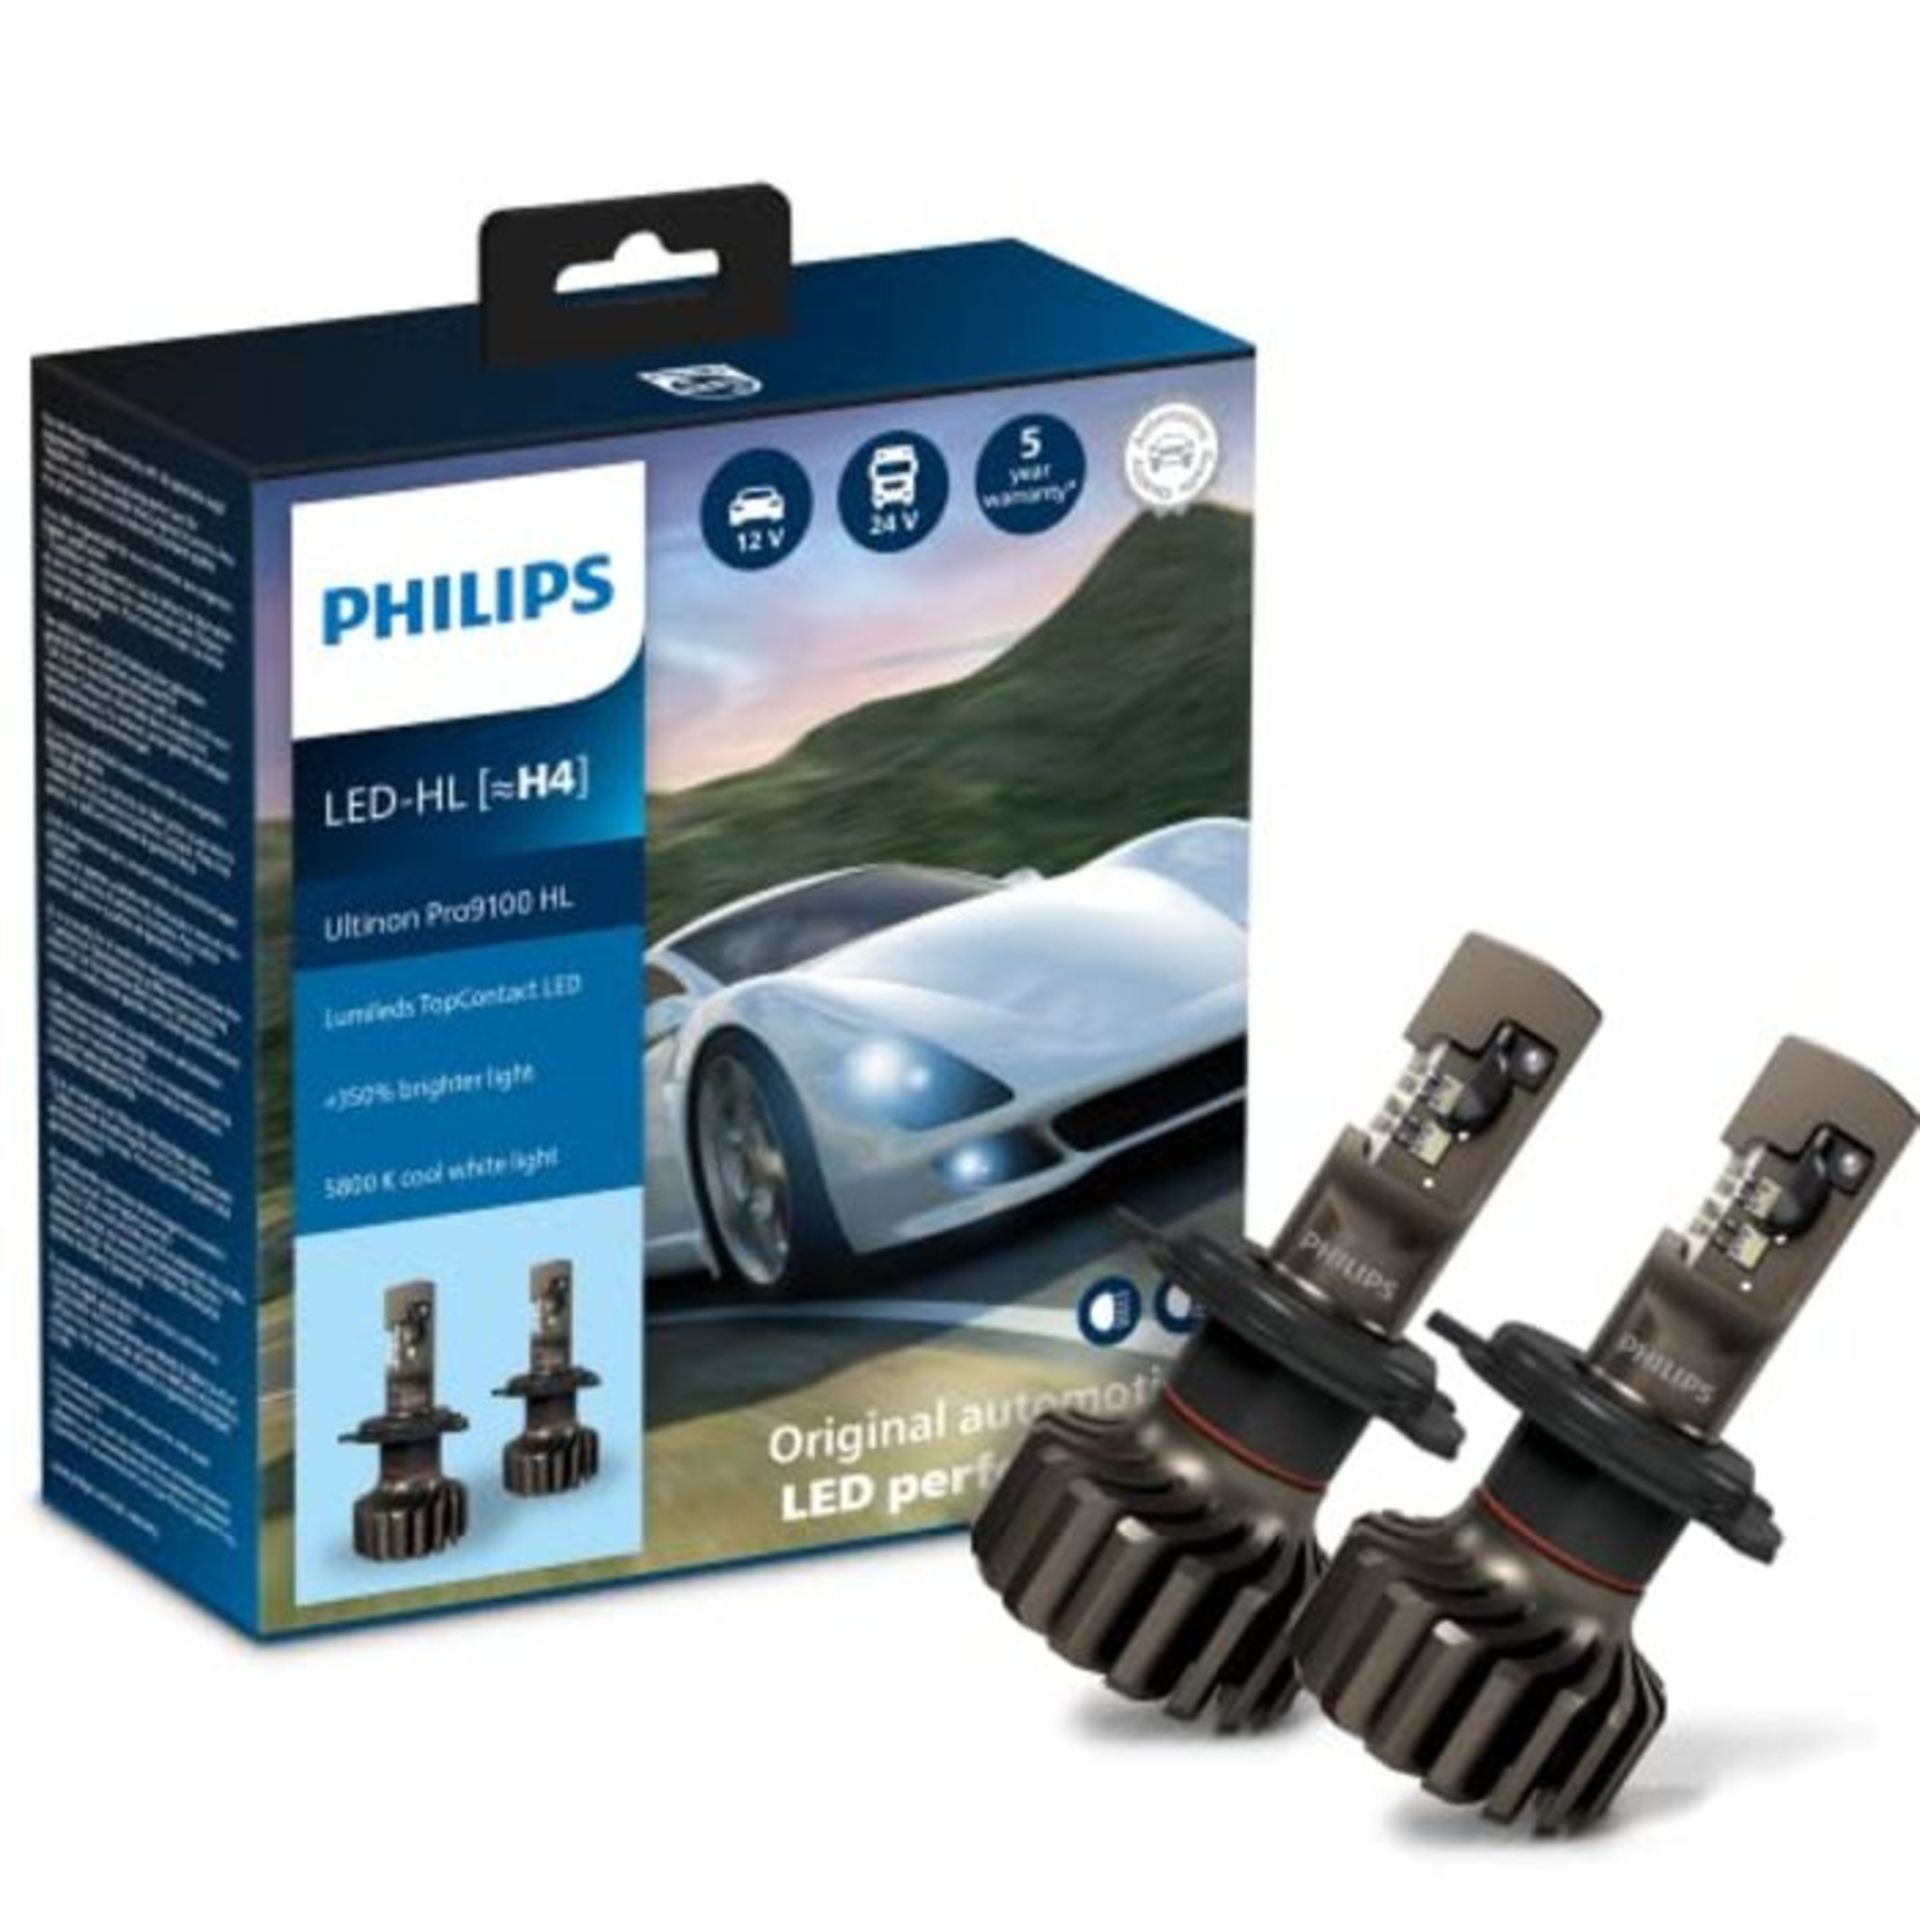 RRP £149.00 Philips Ultinon Pro9100 LED car headlight bulb (H4), +350%, 5.800K, set of 2